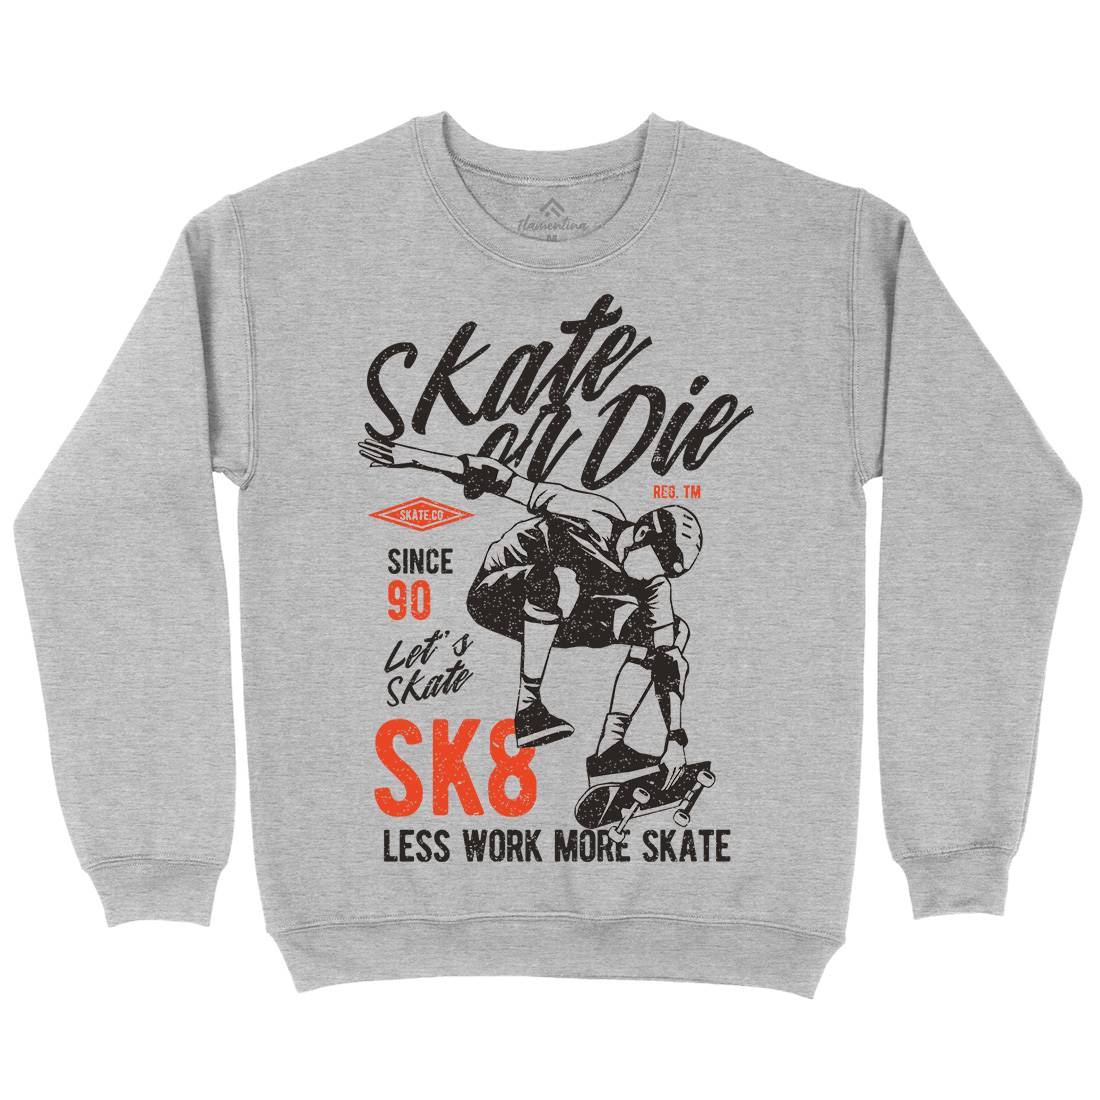 Or Die Mens Crew Neck Sweatshirt Skate A754